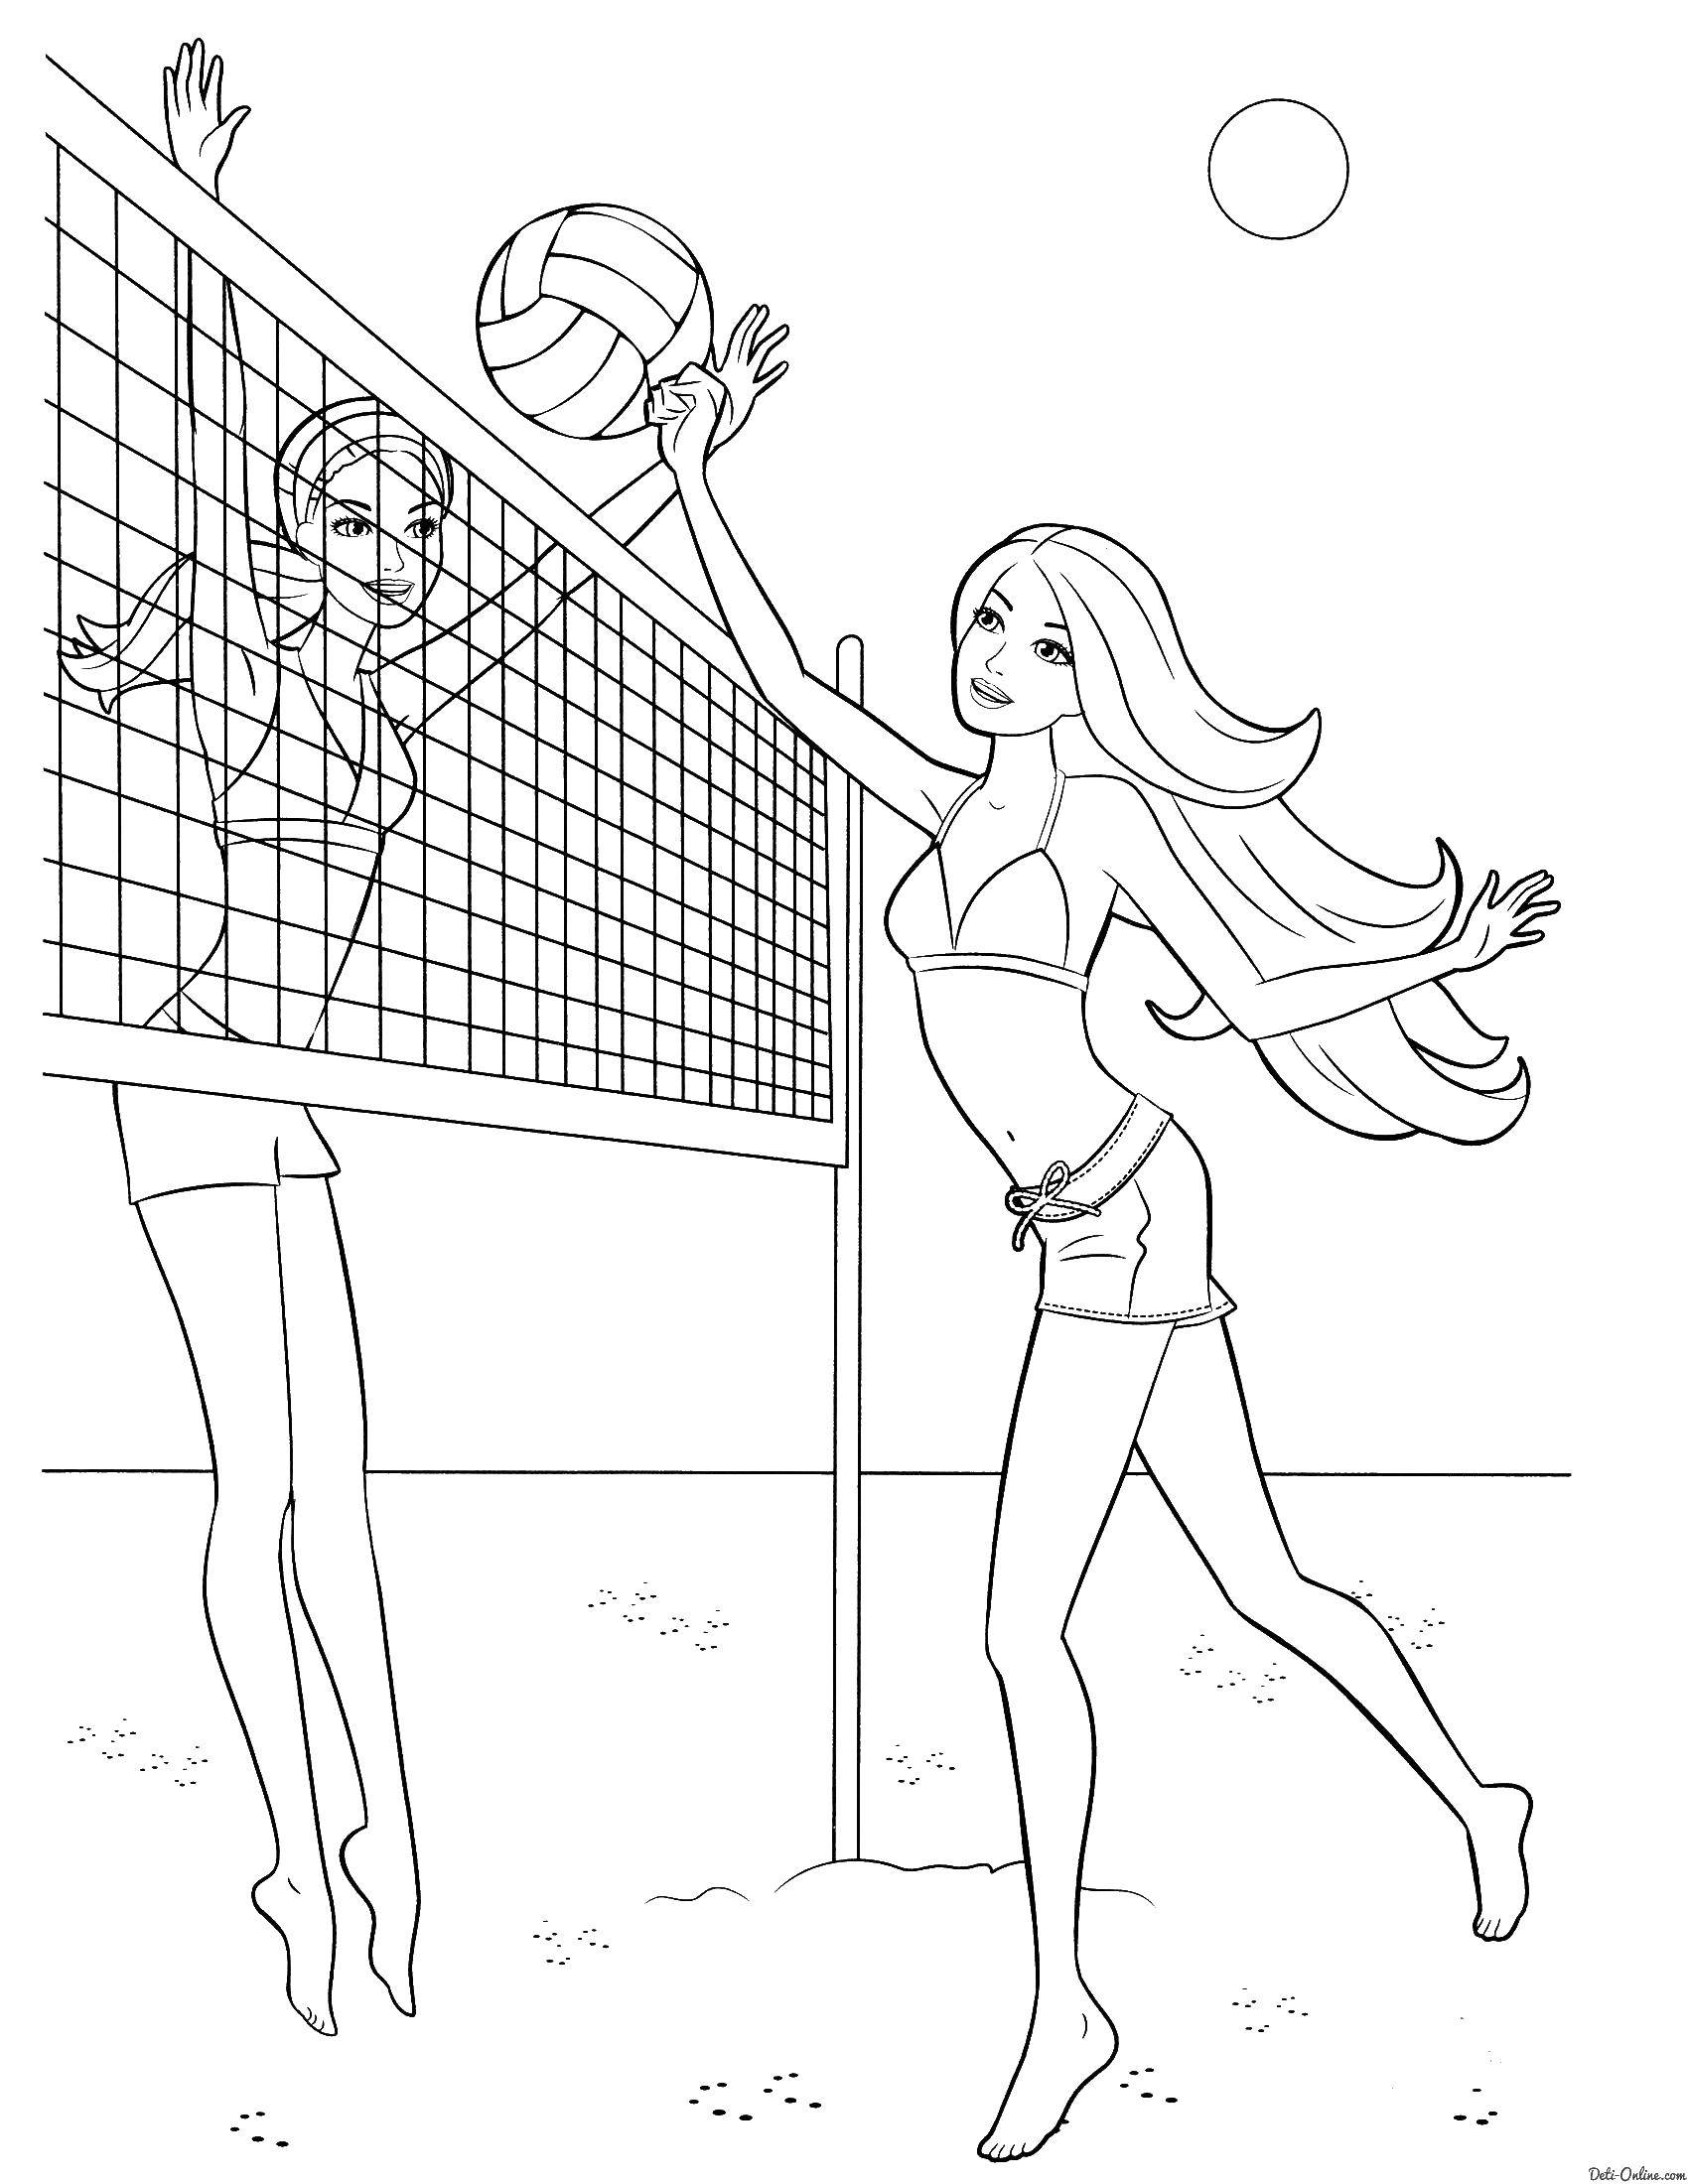 Раскраски с барби по серии мультфильмов  для девочек  Барби играют в волейбол